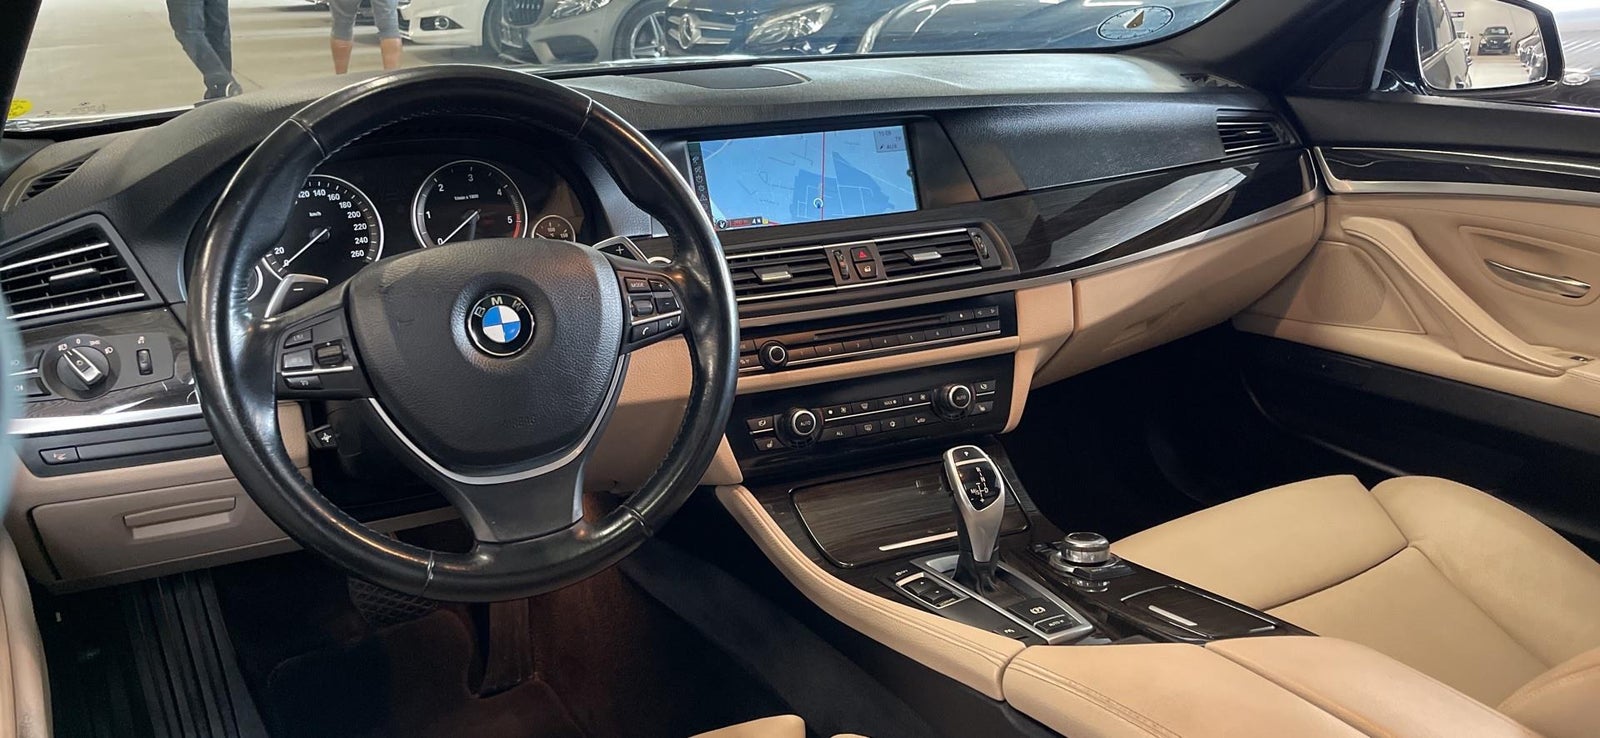 BMW 530d 3,0 aut. Diesel aut. Automatgear modelår 2011 km